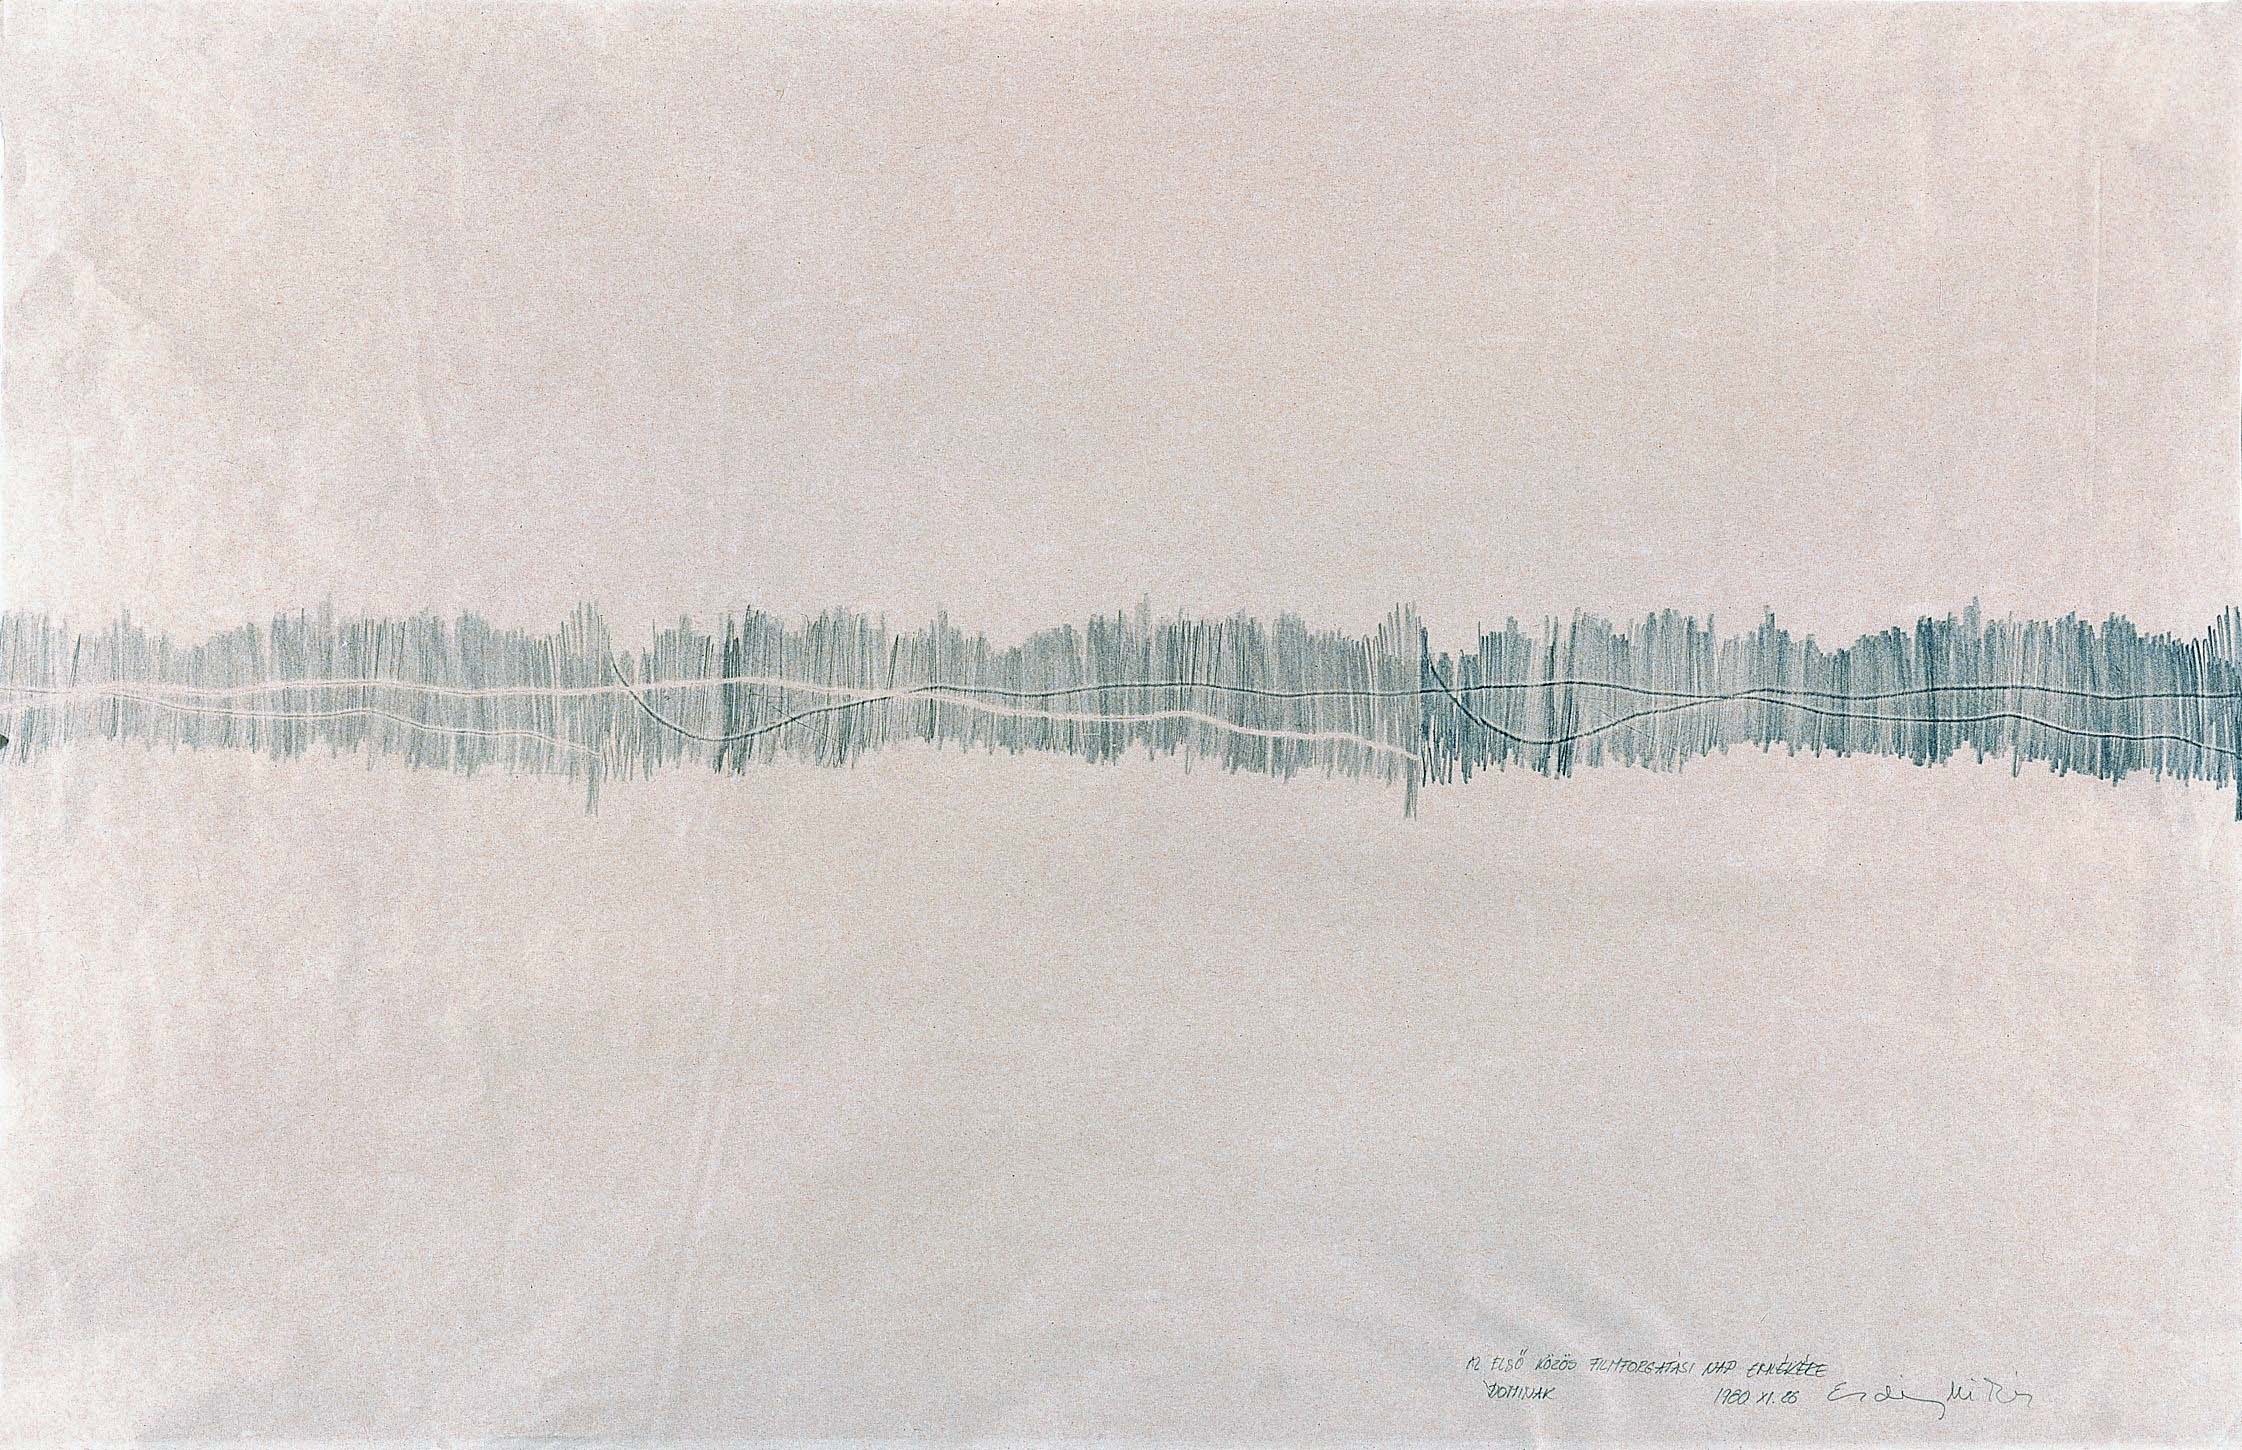 Miklós ERDÉLY: Threadwork, around 1979, paper, pencil, carbon paper, frottage, 61x63 cm